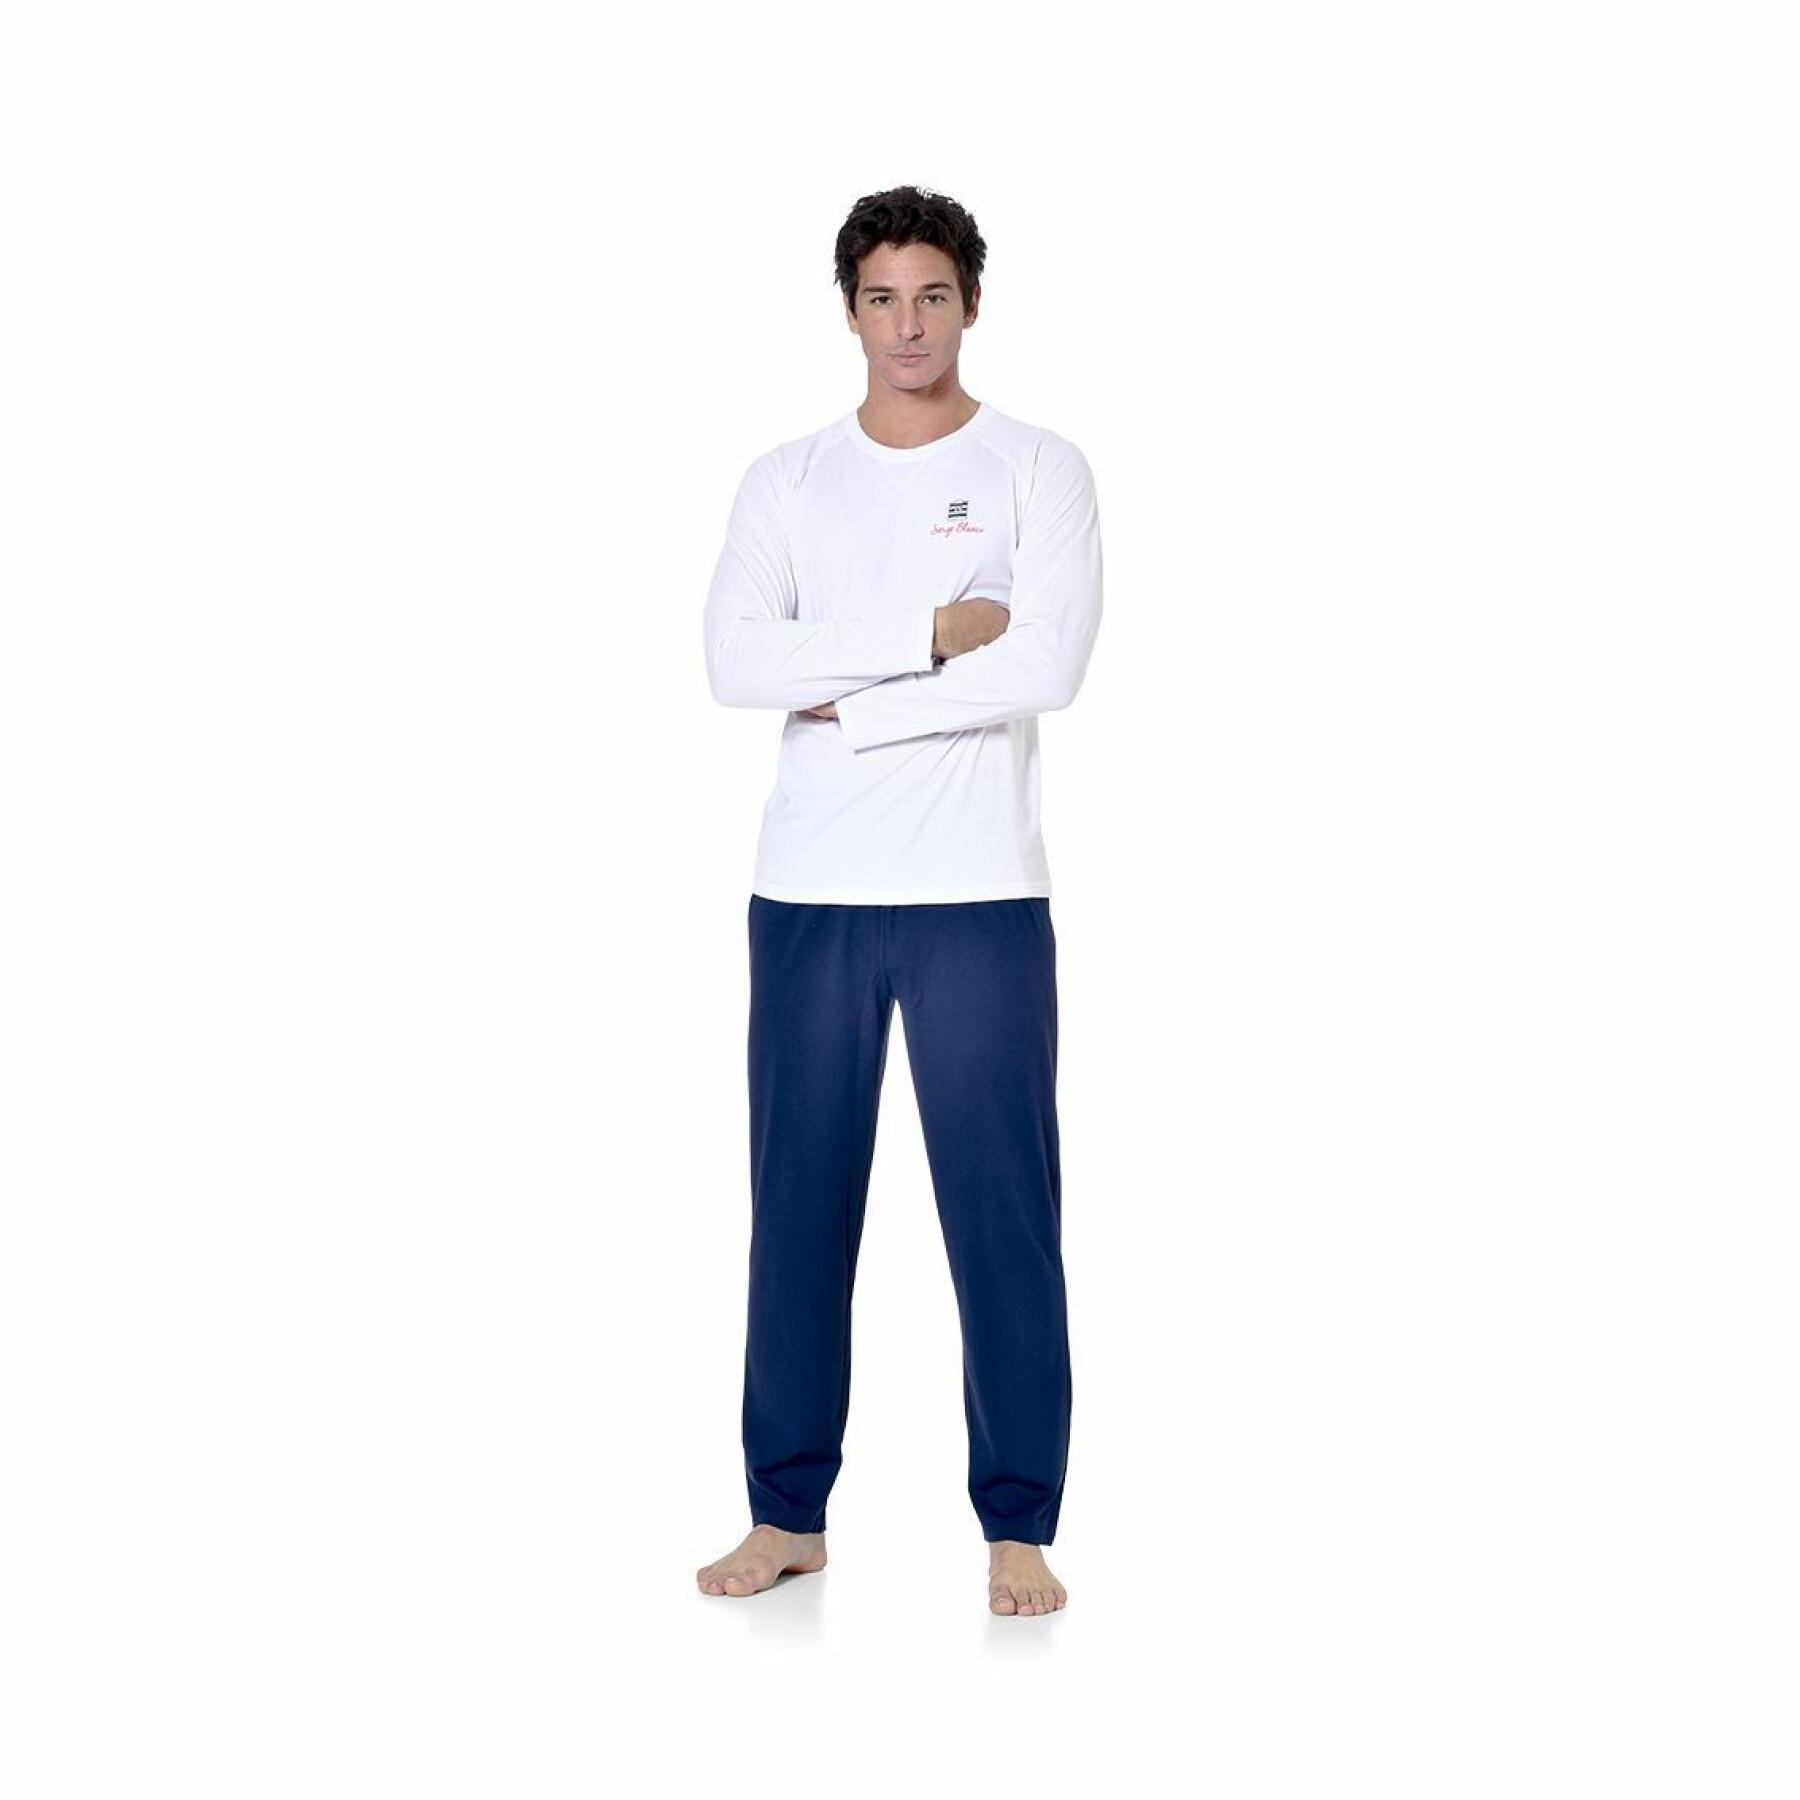 Långt pyjamasset med tvåfärgad t-shirt med rund halsringning Serge Blanco